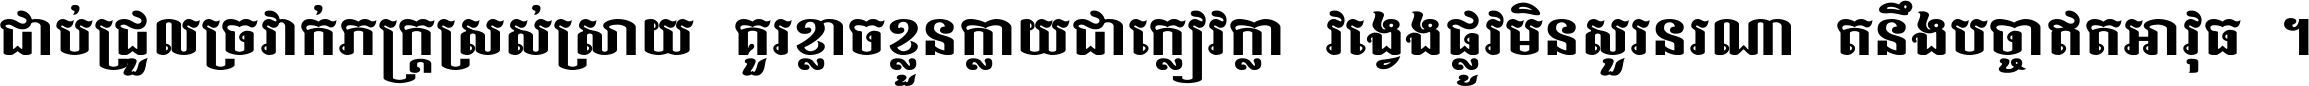 Khmer Mondulkiri-s ultra